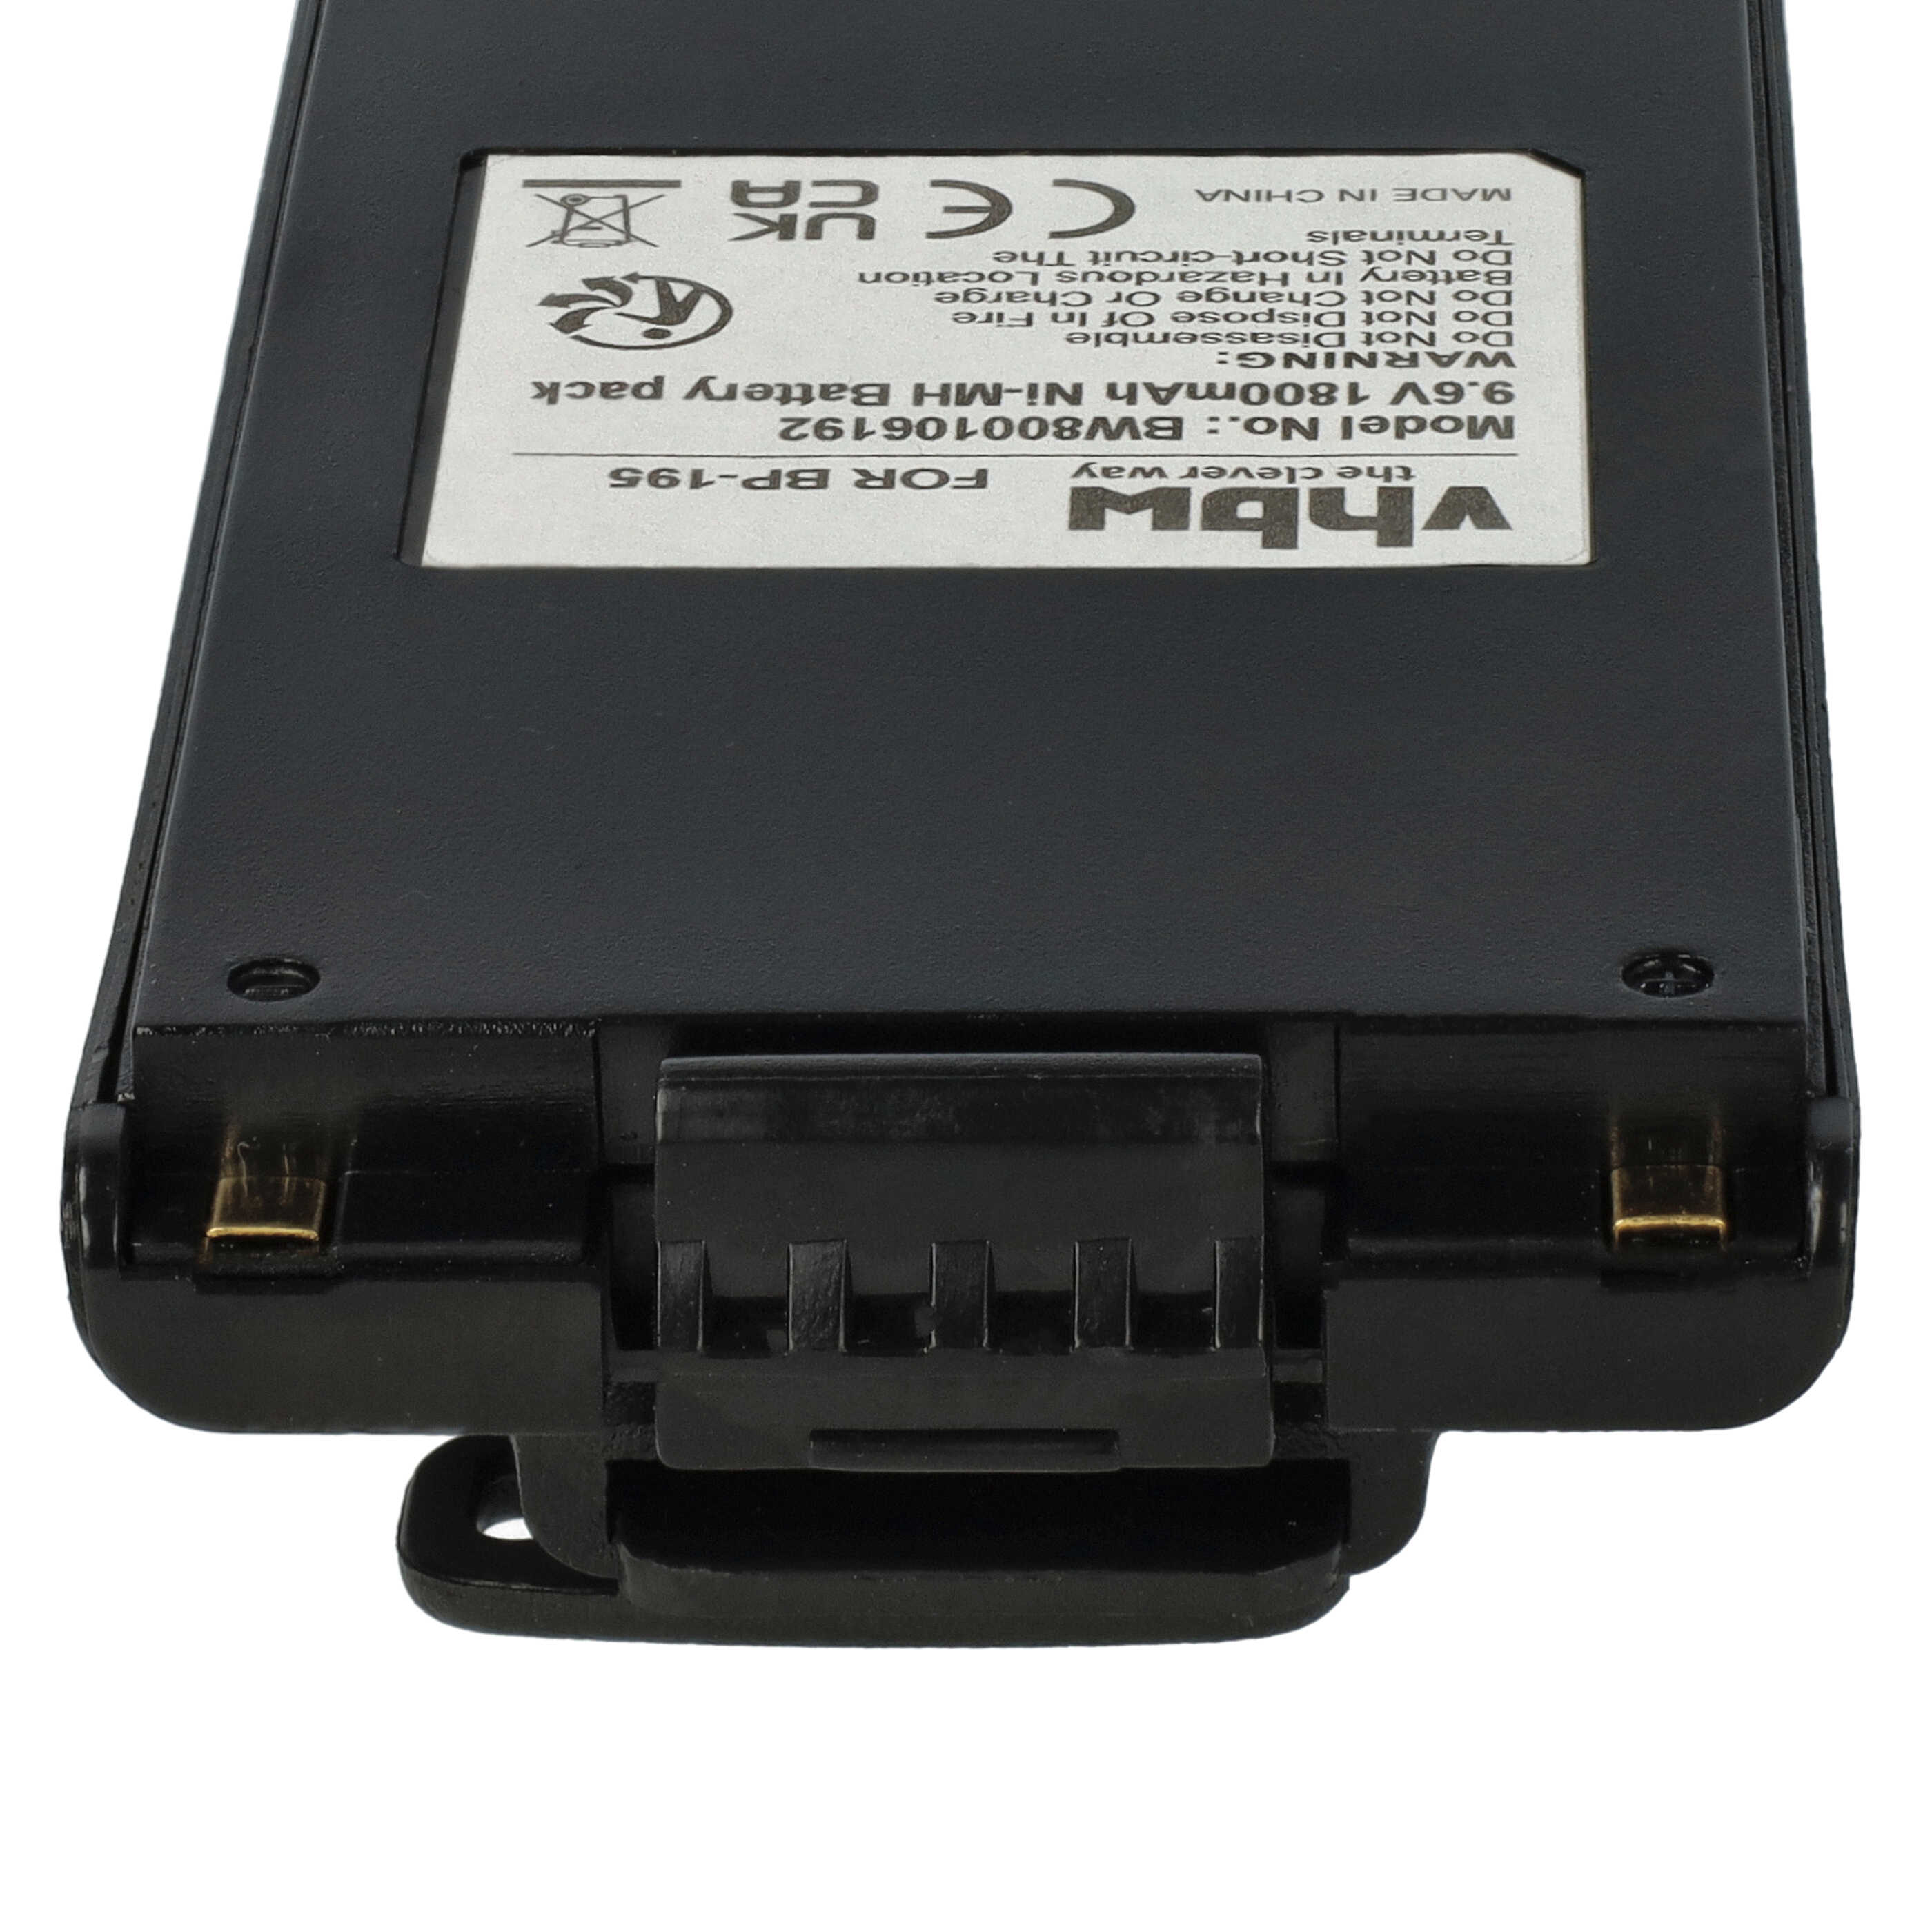 Radio Battery Replacement for Icom BP-195, BP-196H, BP-196, BP-196R - 1800mAh 9.6V NiMH + Belt Clip